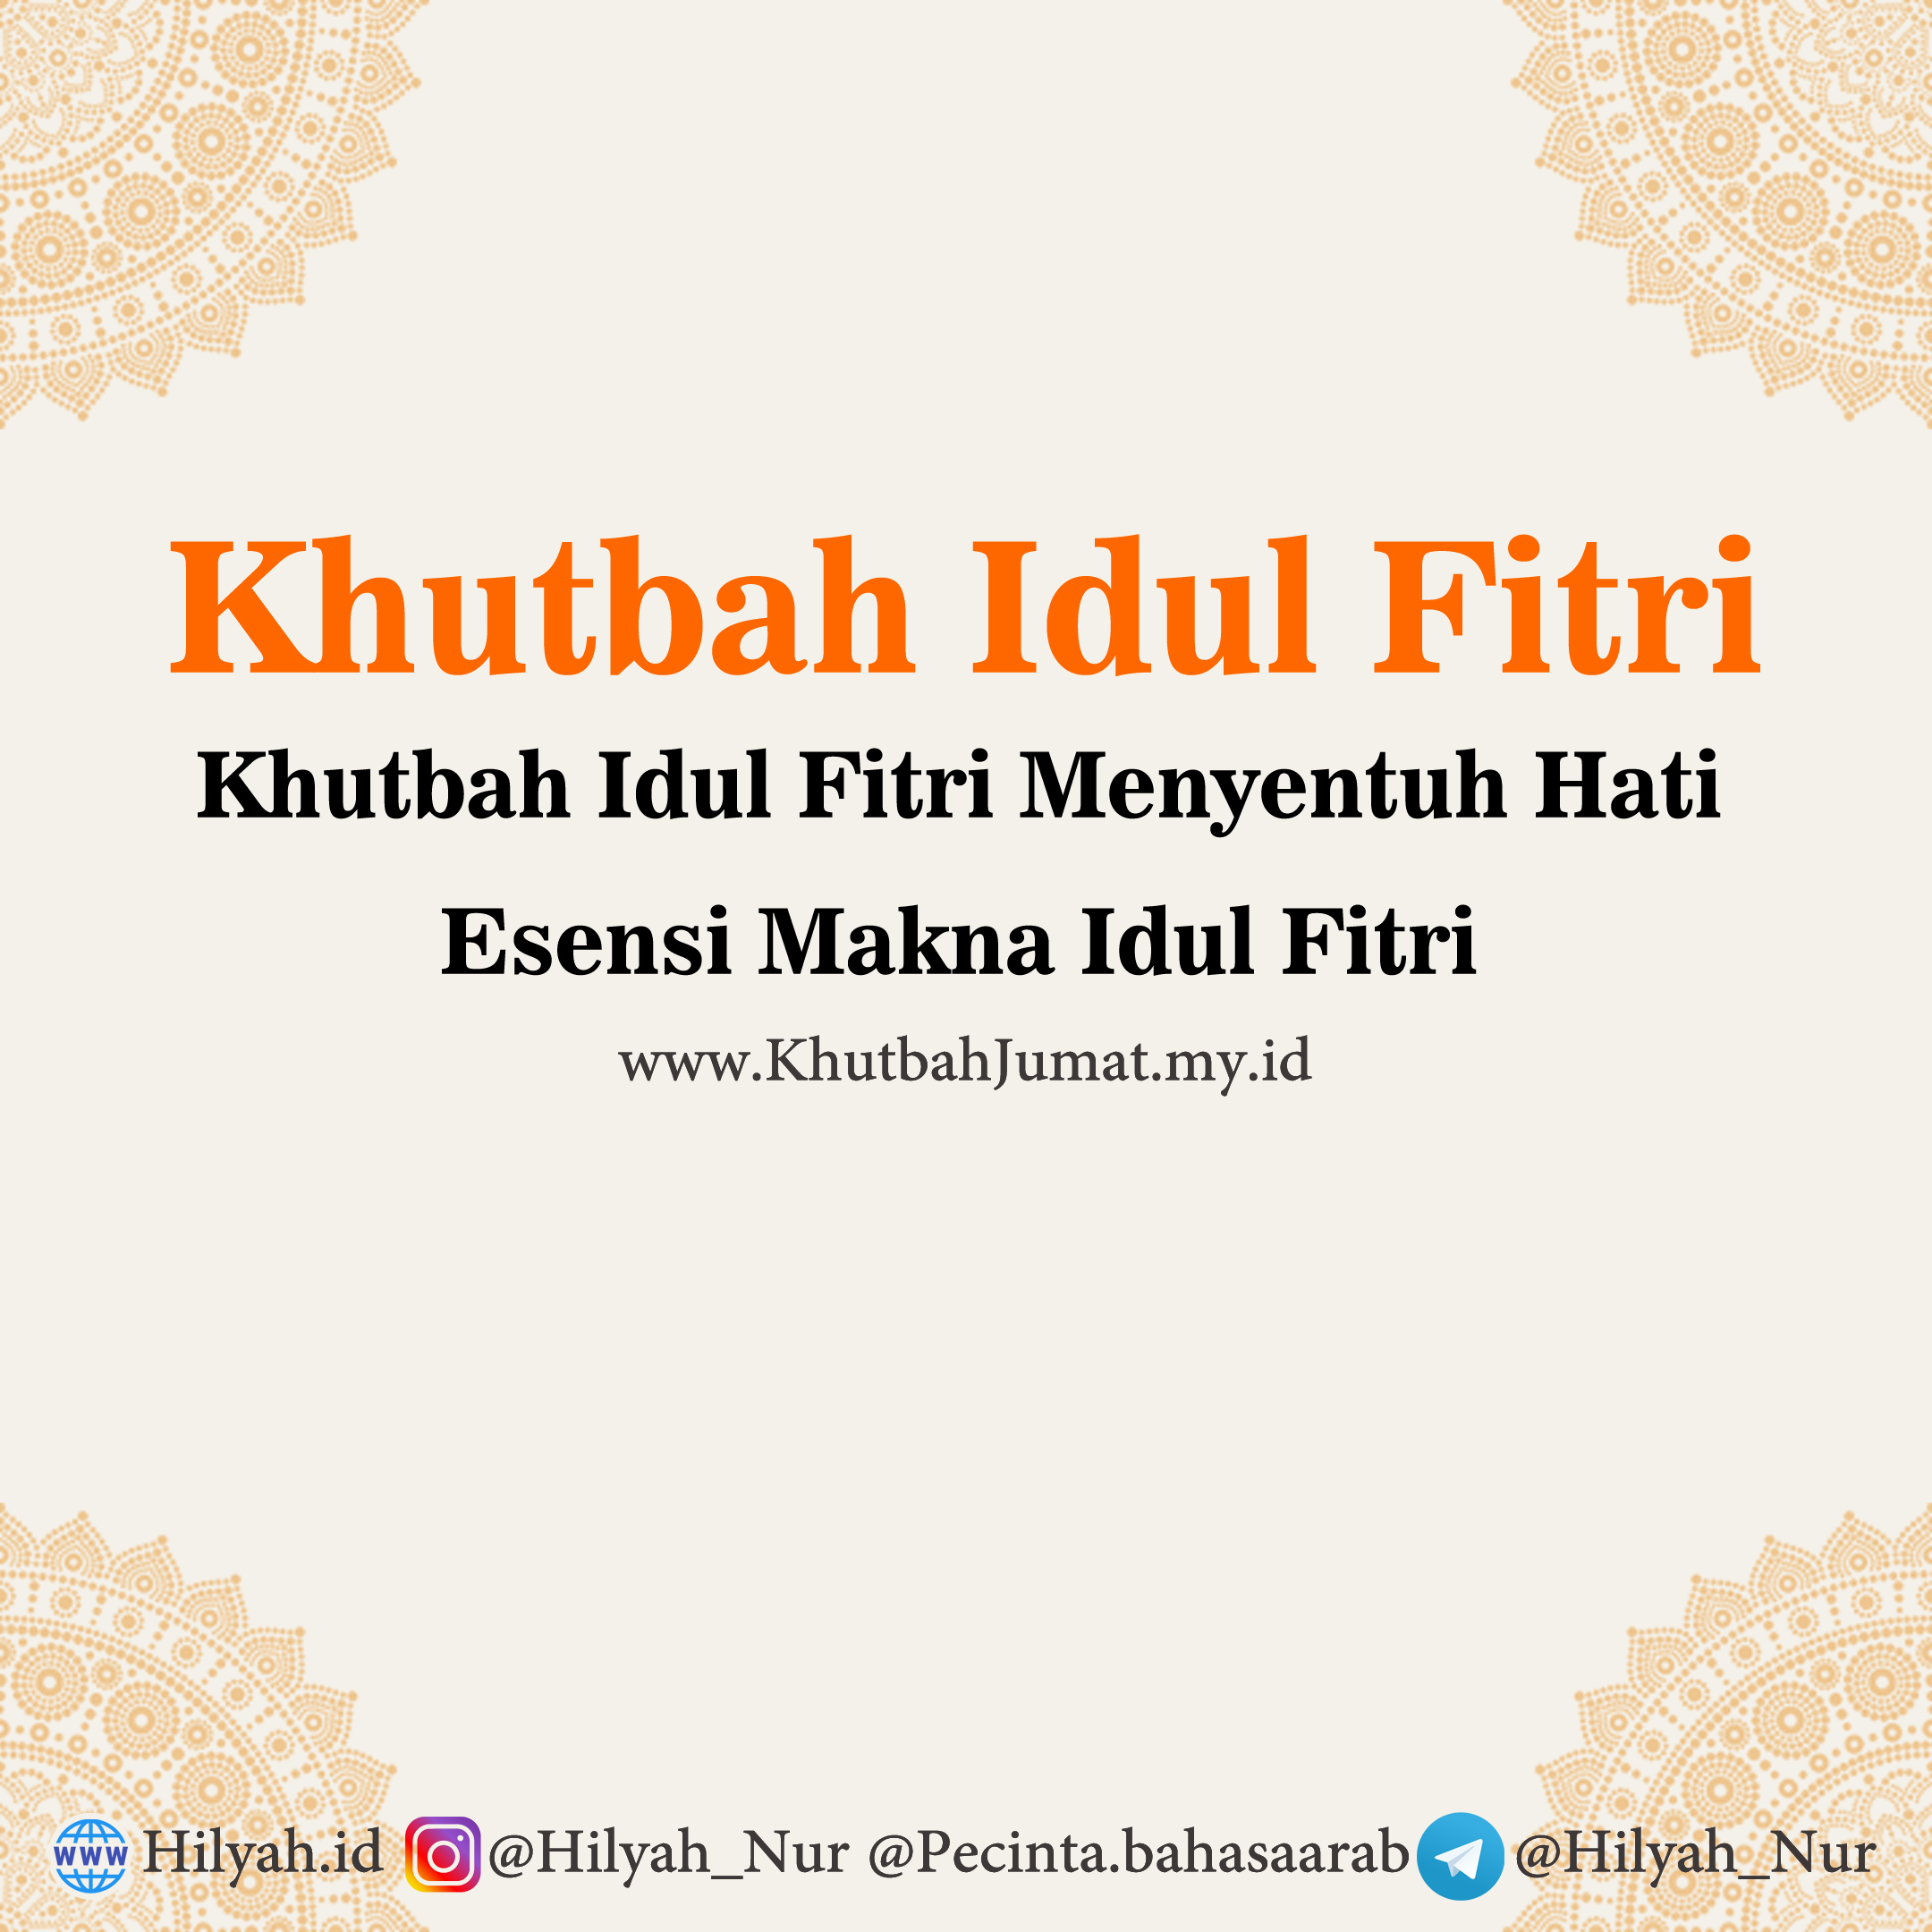 Download khutbah idul adha 2021 pdf